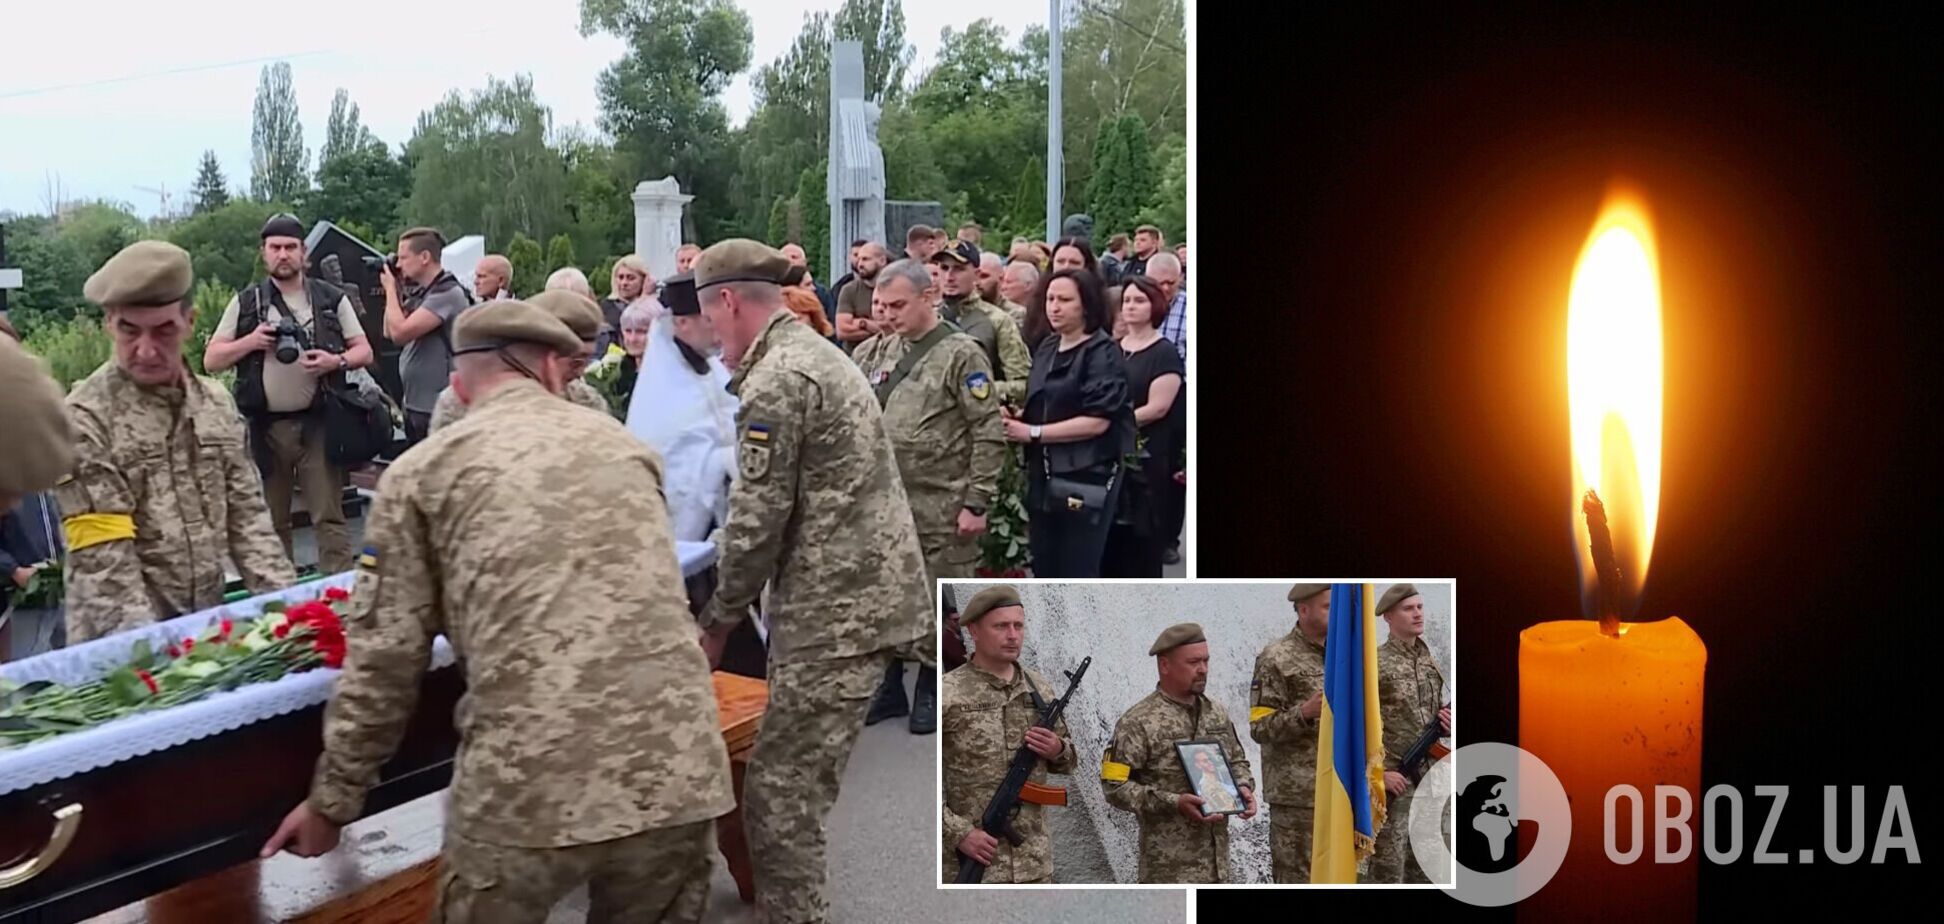 Похорон украинского защитника